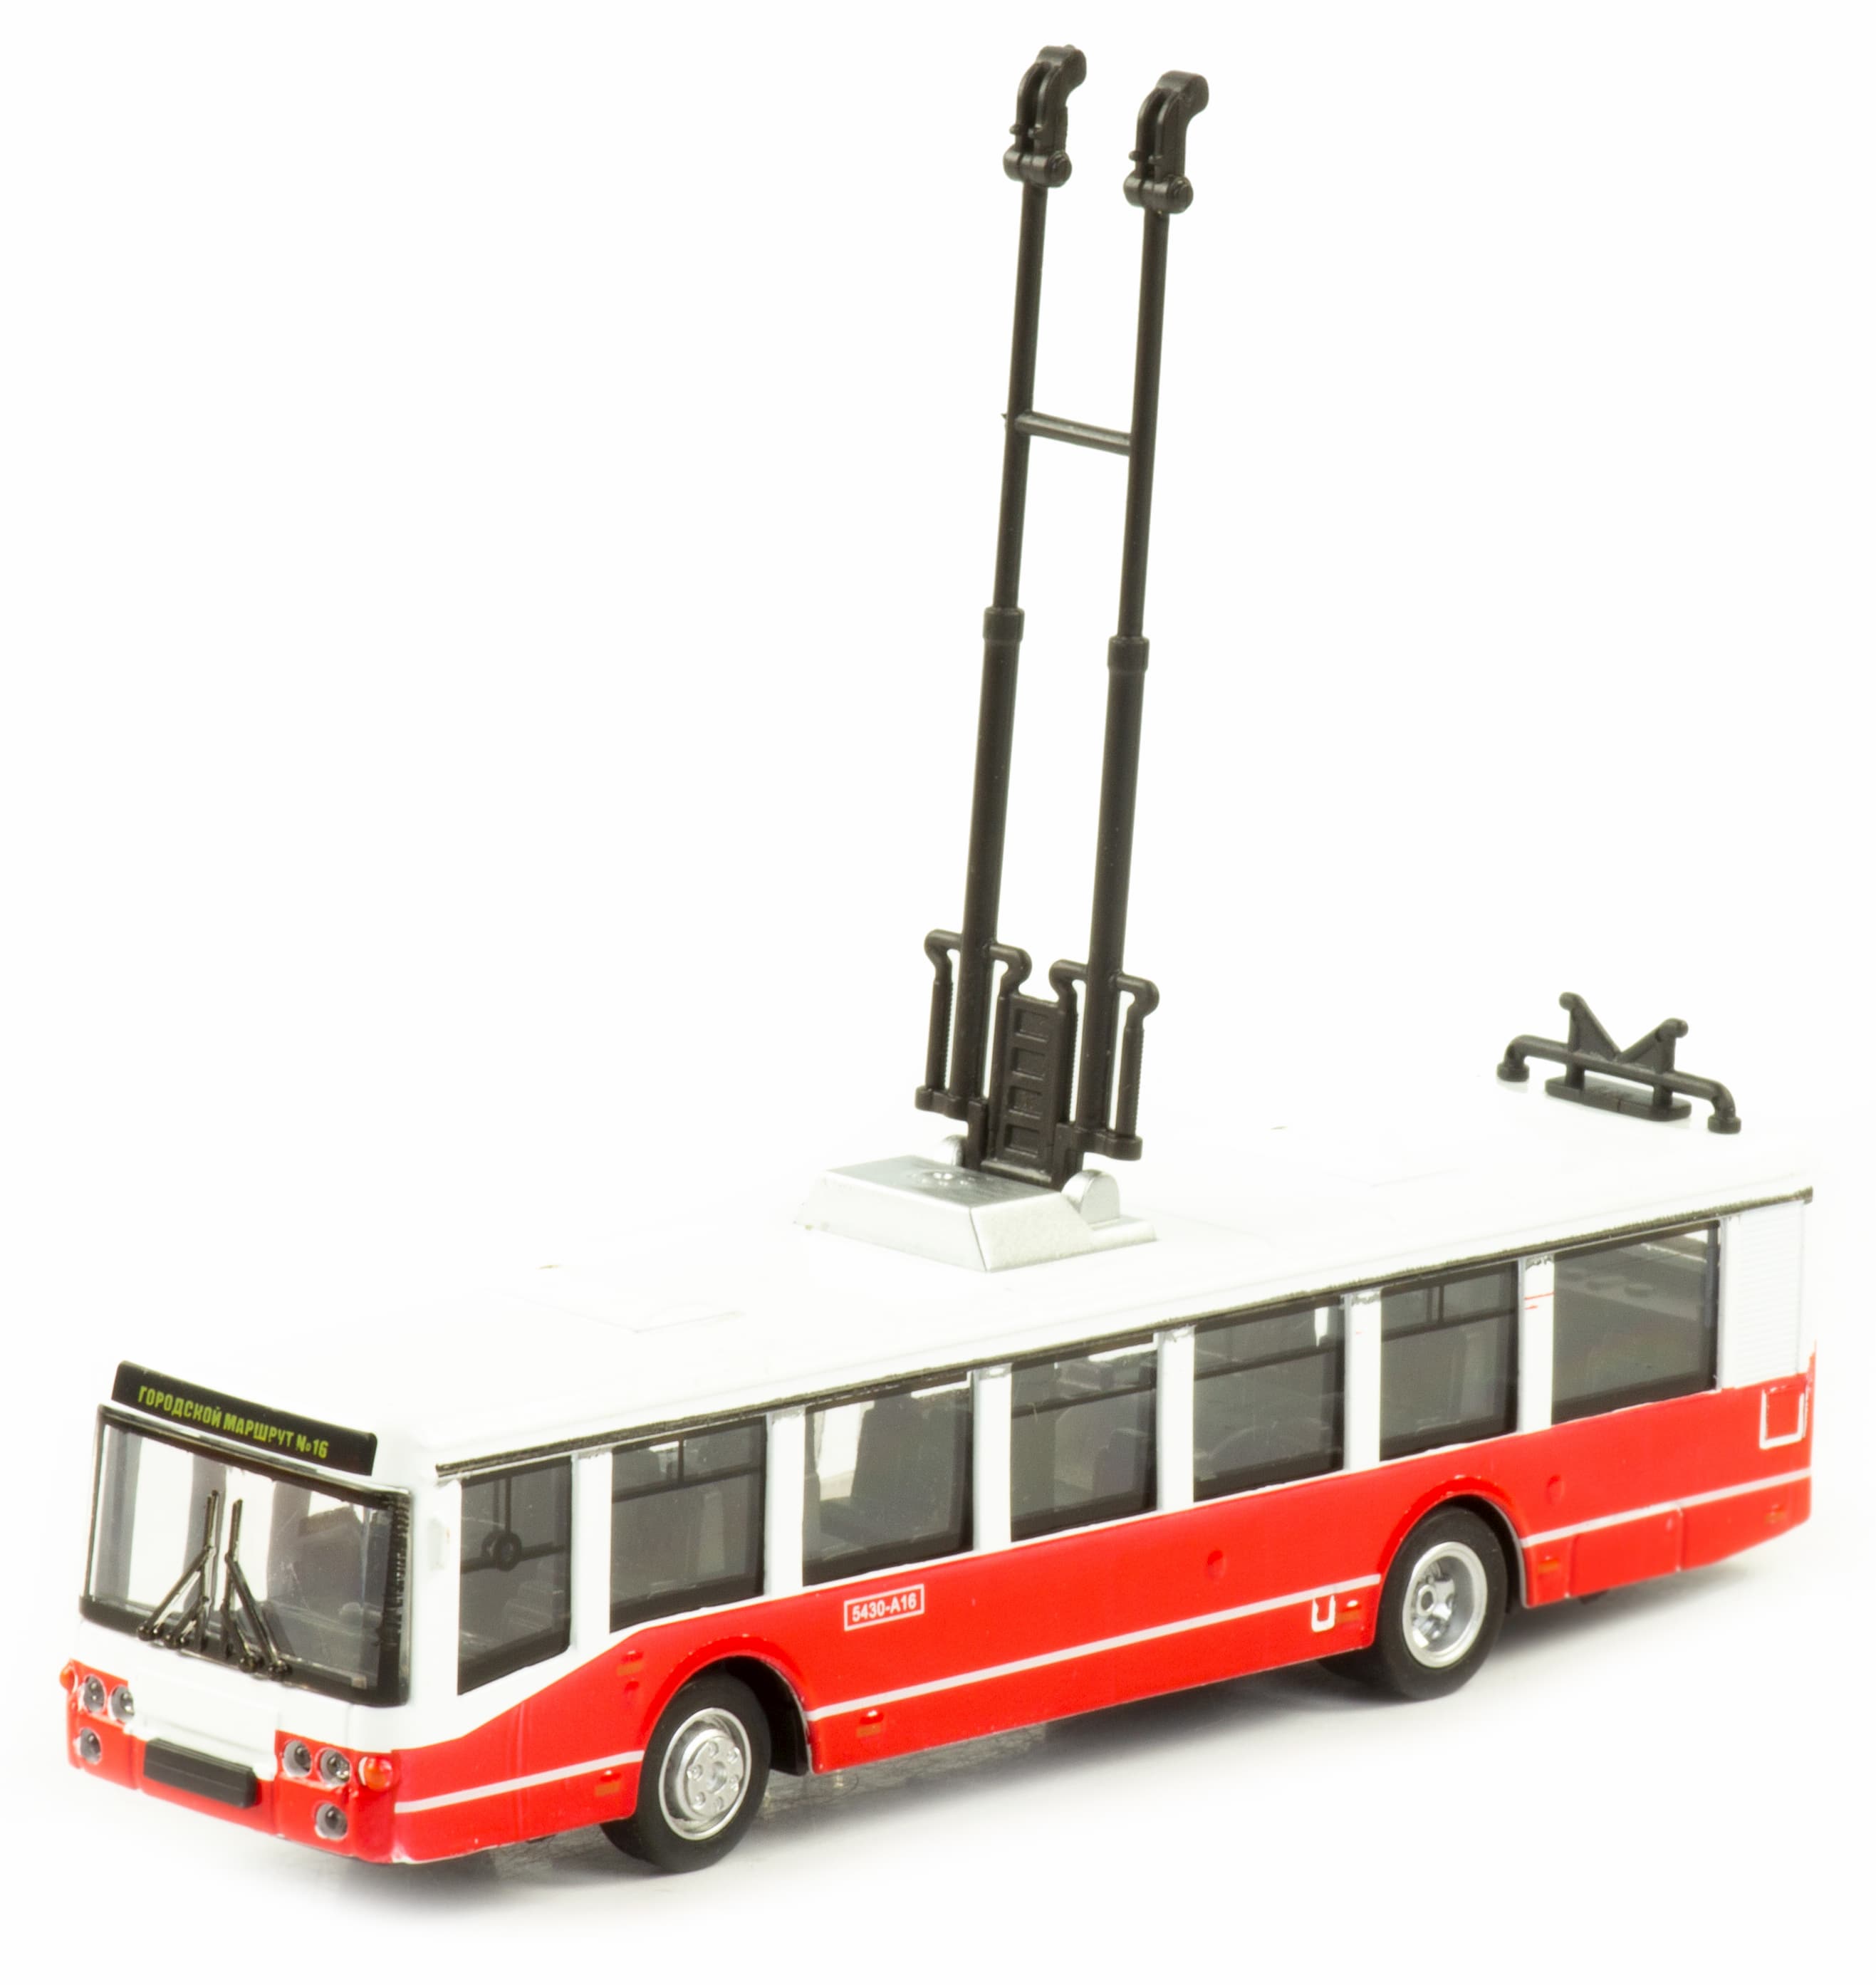 Металлический троллейбус 1:32 «ЛиАЗ 5430-А16» 17 см. 1811-12D инерционный, свет, звук / Микс